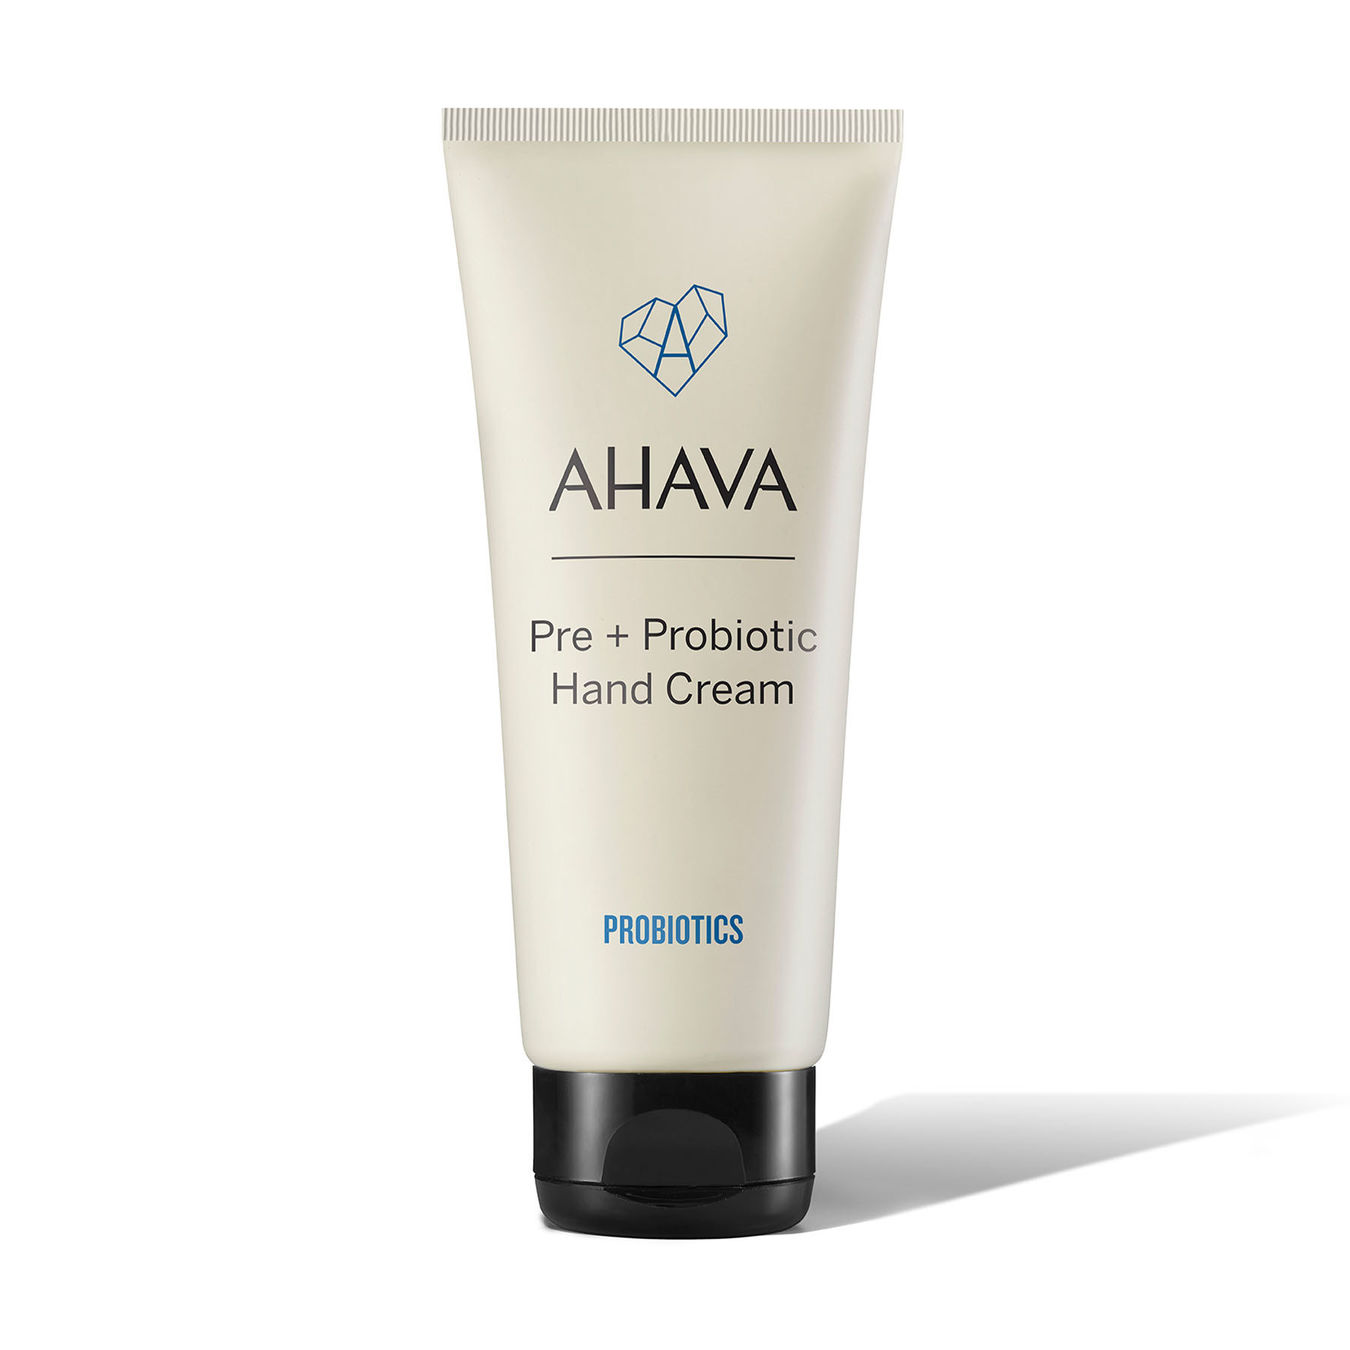 AHAVA Pre + Probiotic Hand Cream